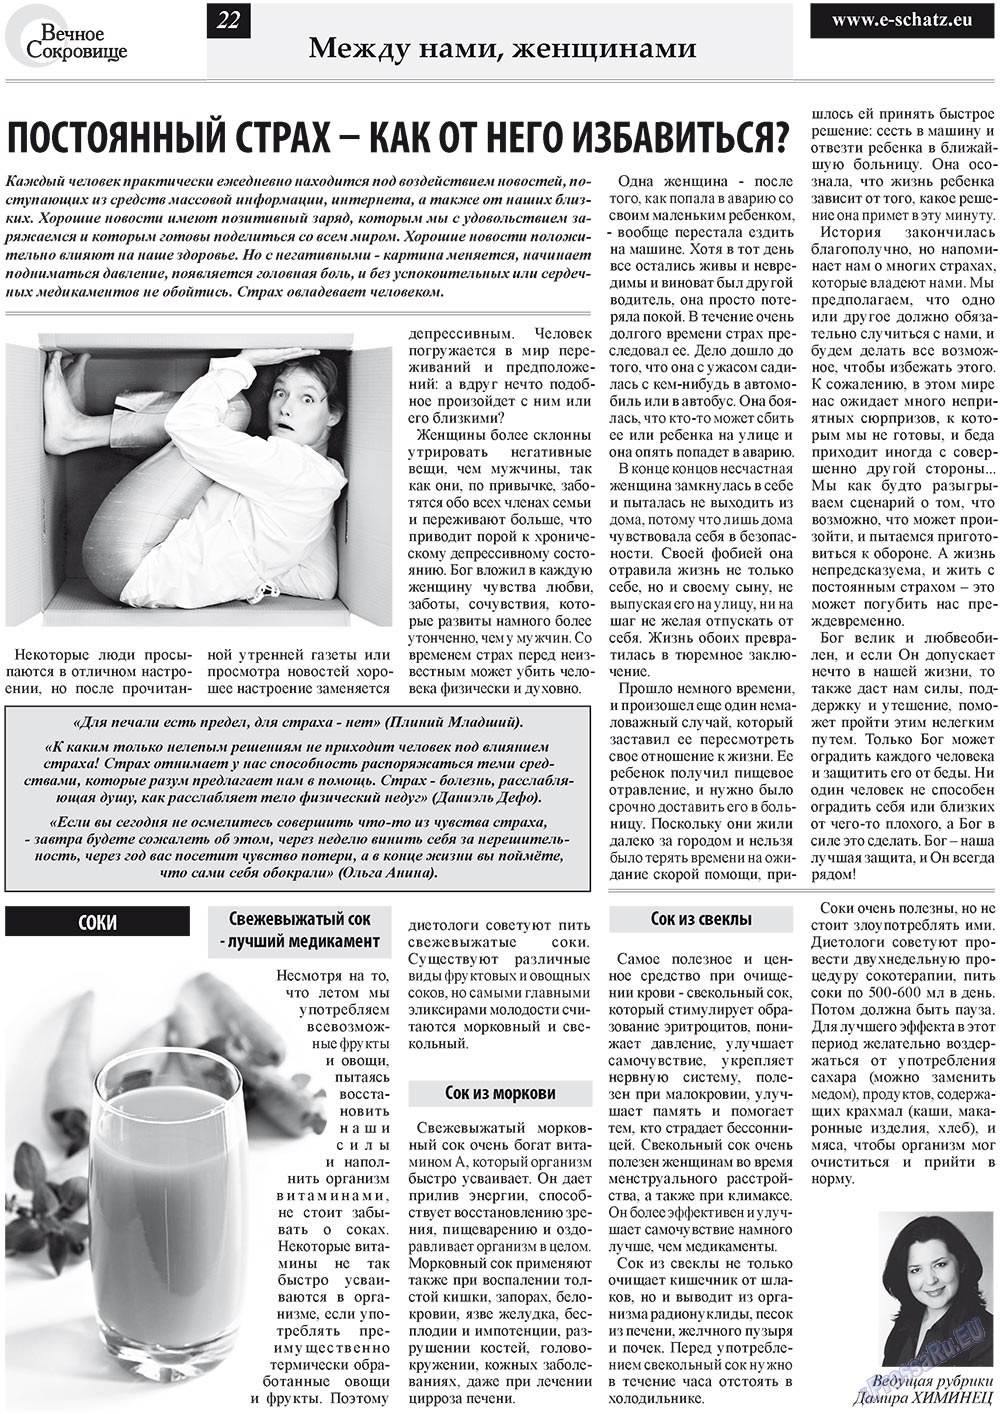 Вечное сокровище (газета). 2011 год, номер 4, стр. 22